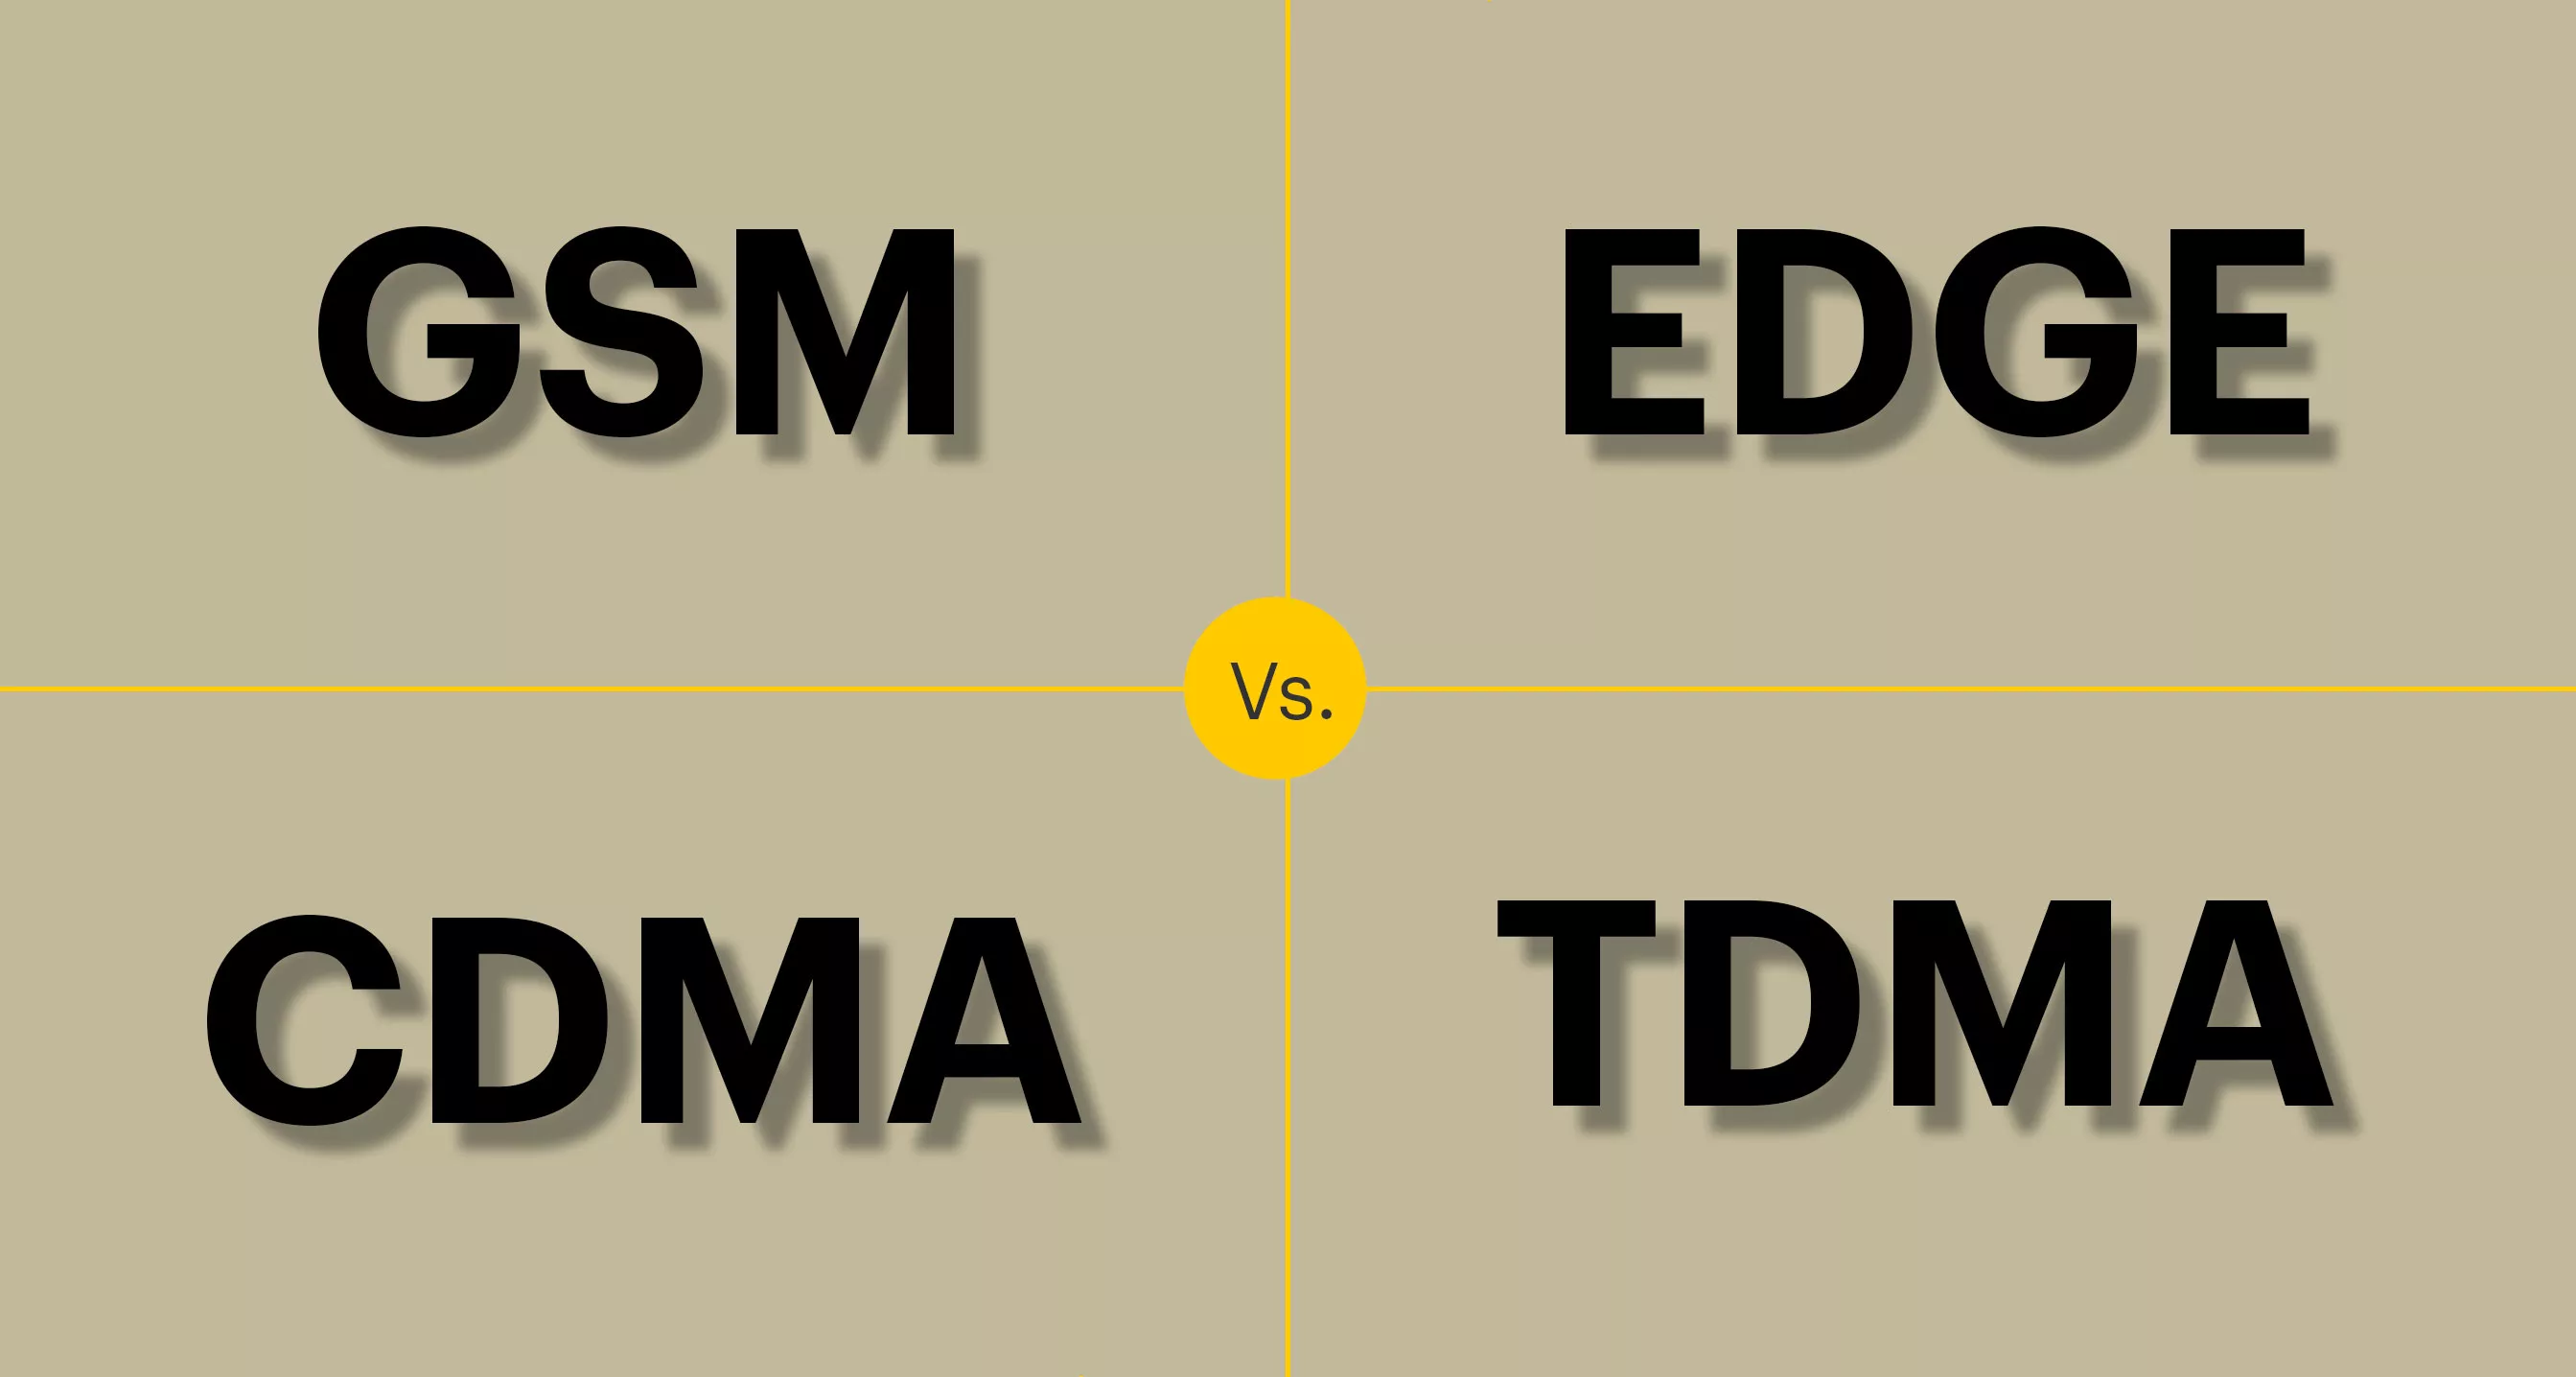 GSM vs. EDGE vs. CDMA vs. TDMA - 23 - febrero 6, 2021